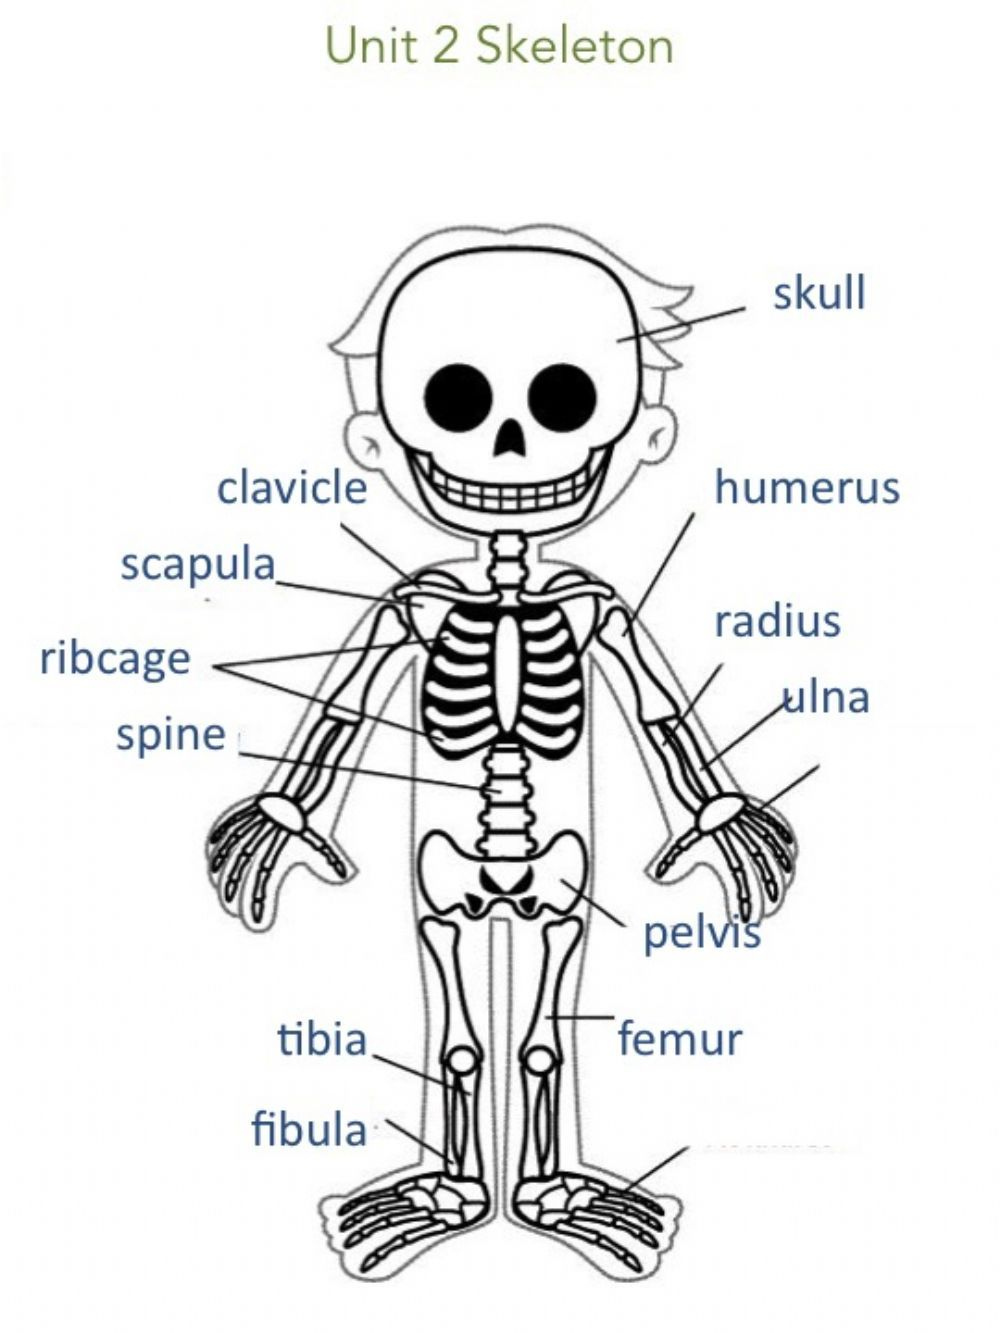 Unit 2 Skeleton Information Interactive Worksheet Human Body 